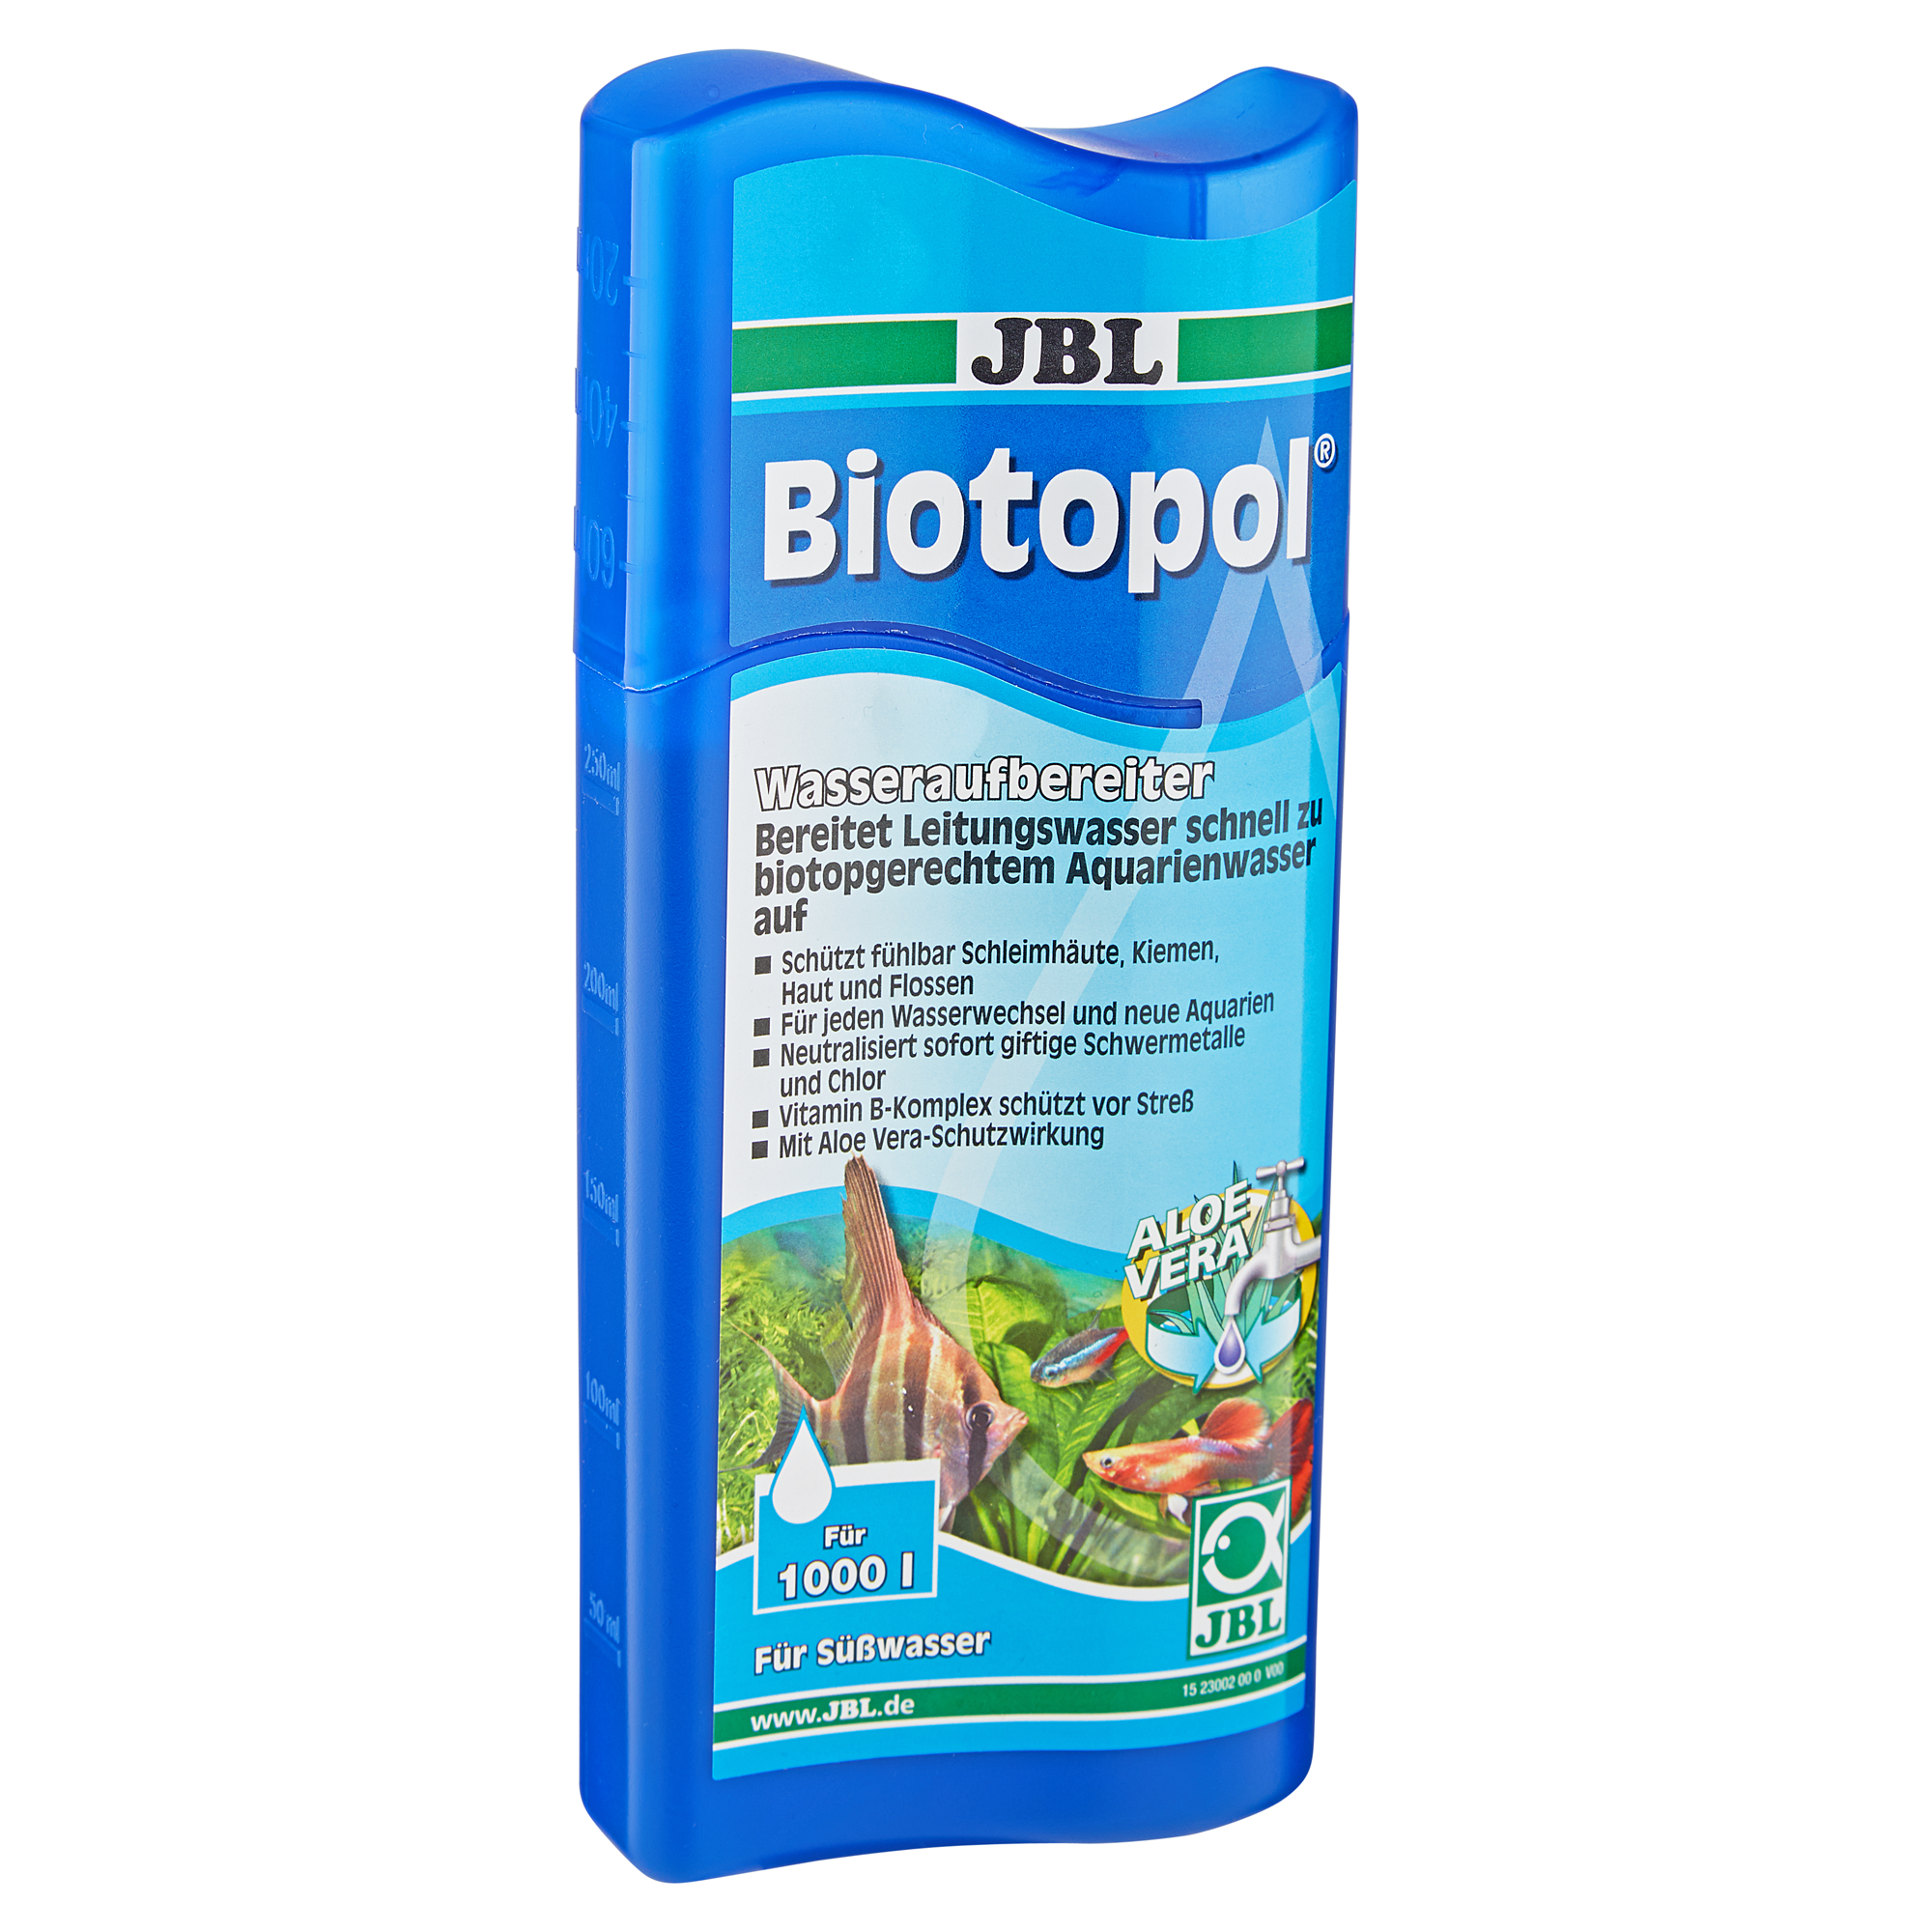 Wasseraufbereiter für Süßwasseraquarien "Biotopol" 250 ml + product picture